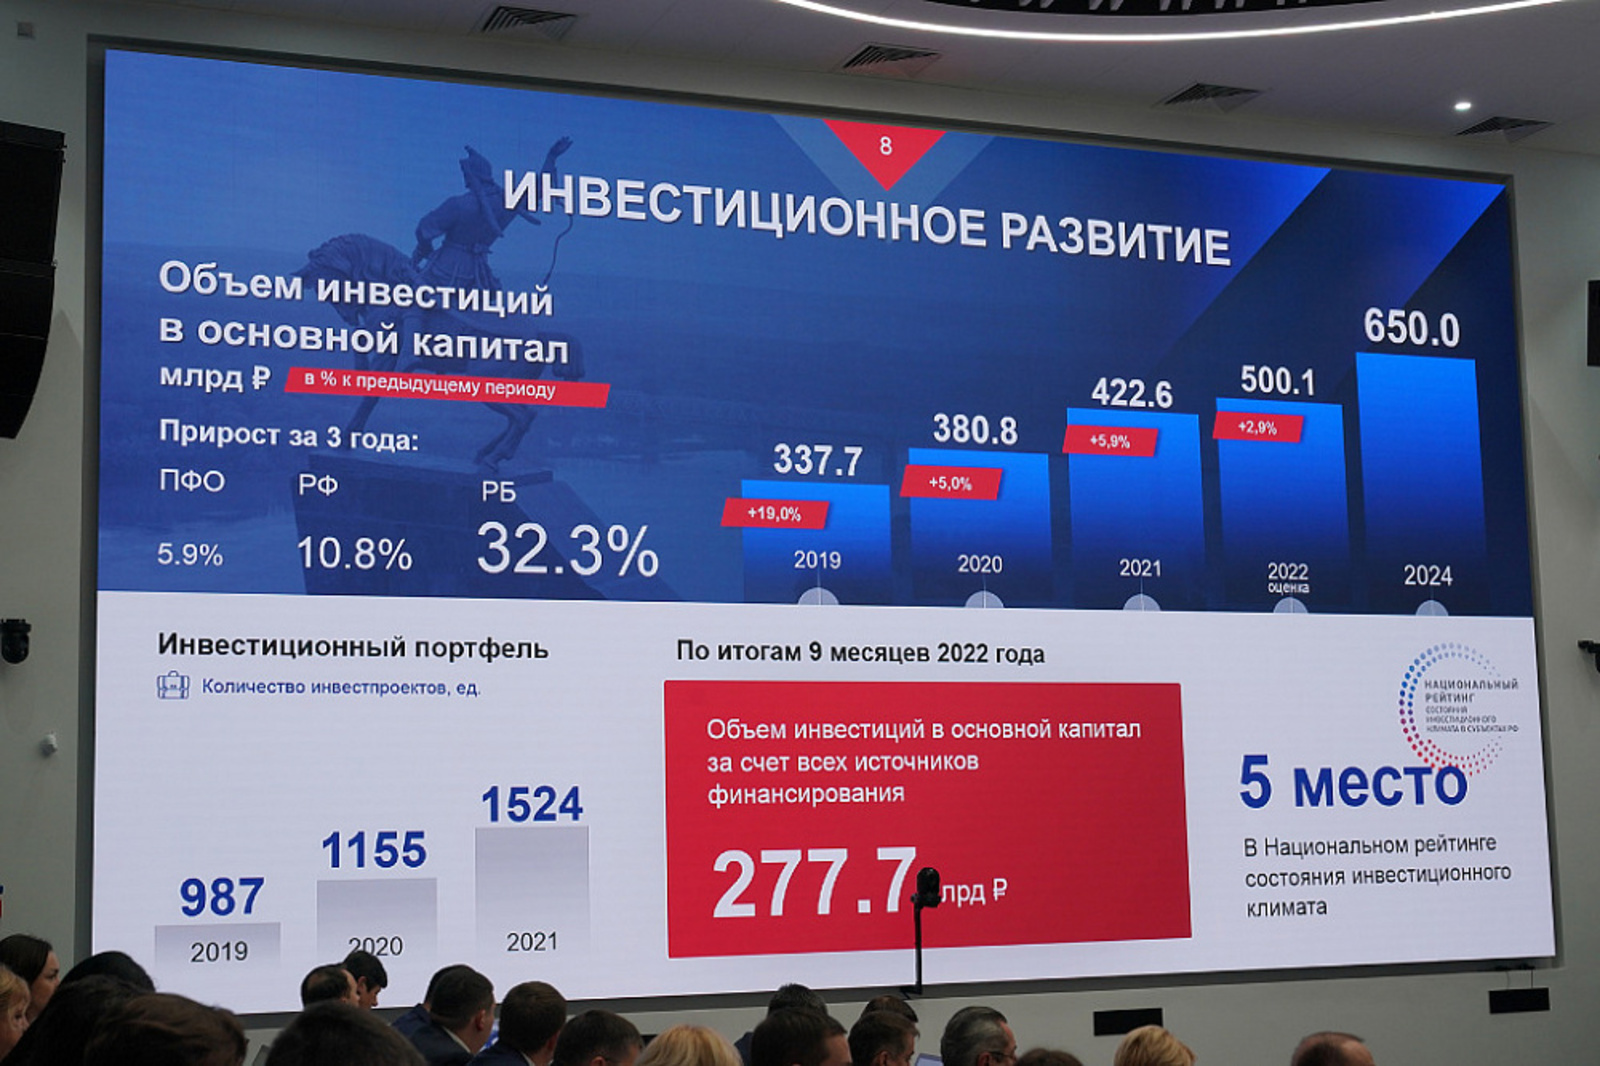 Вице-премьер Правительства РФ отметил высокие позиции региона в стране по основным социально-экономическим показателям